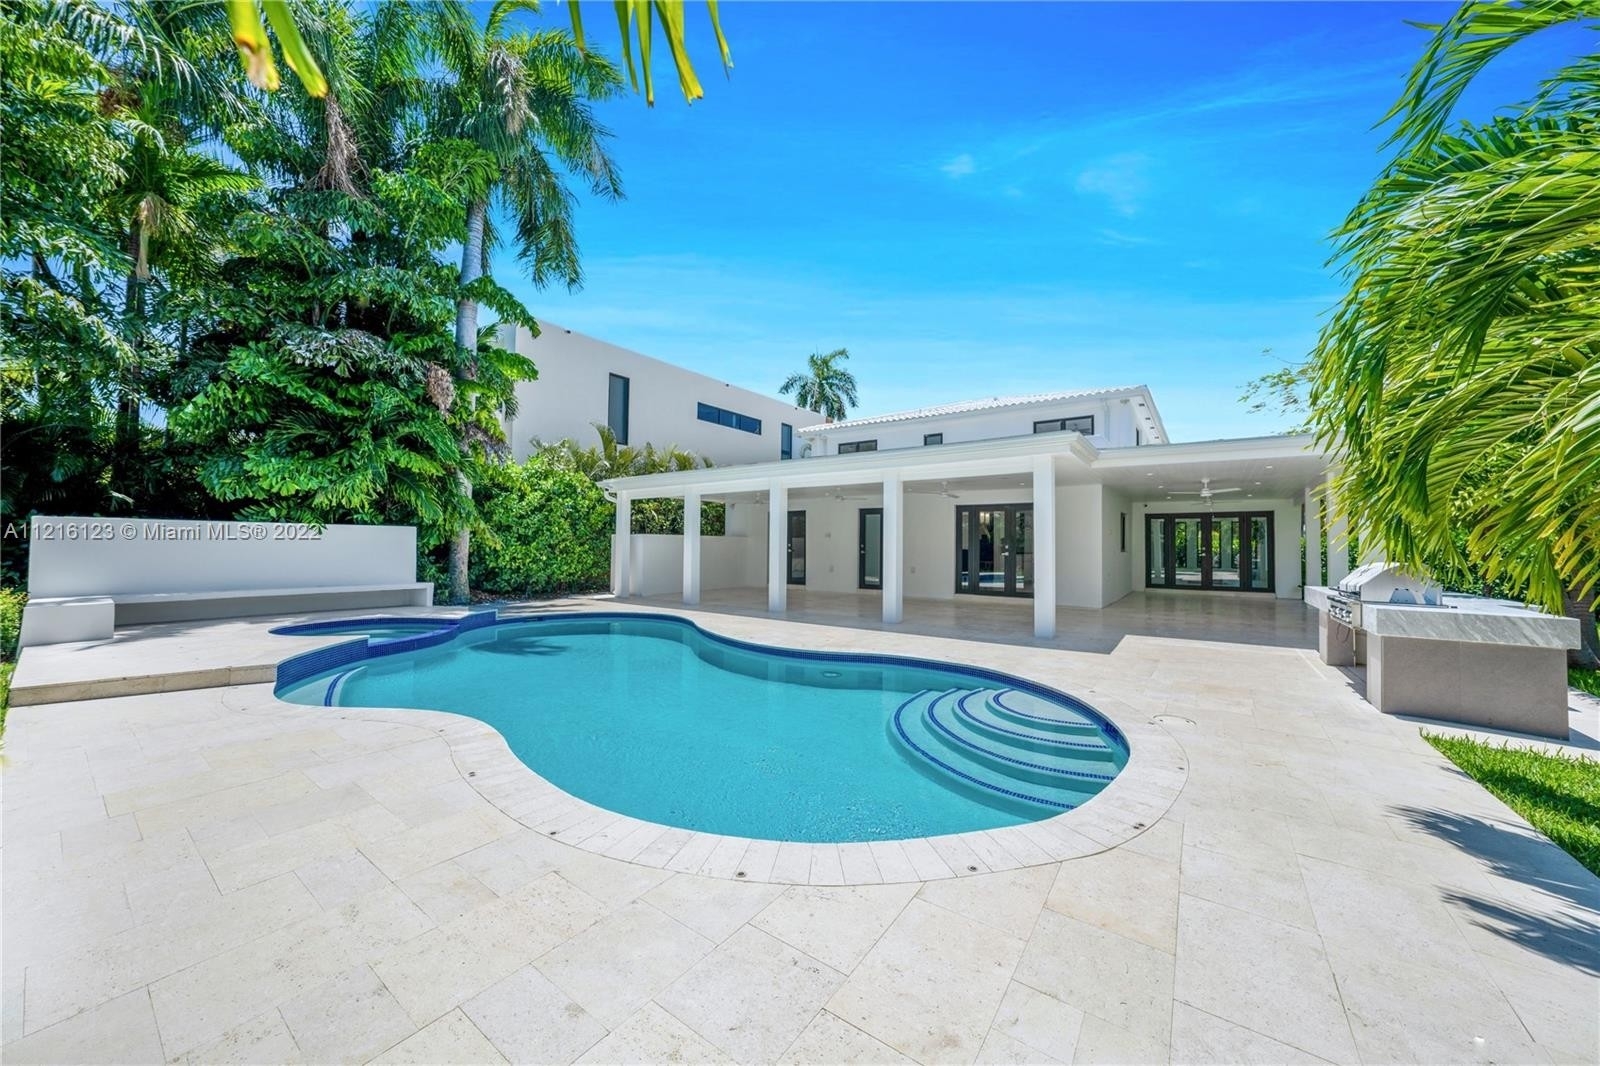 Single Family Home for Sale at Bayshore, Miami Beach, FL 33139